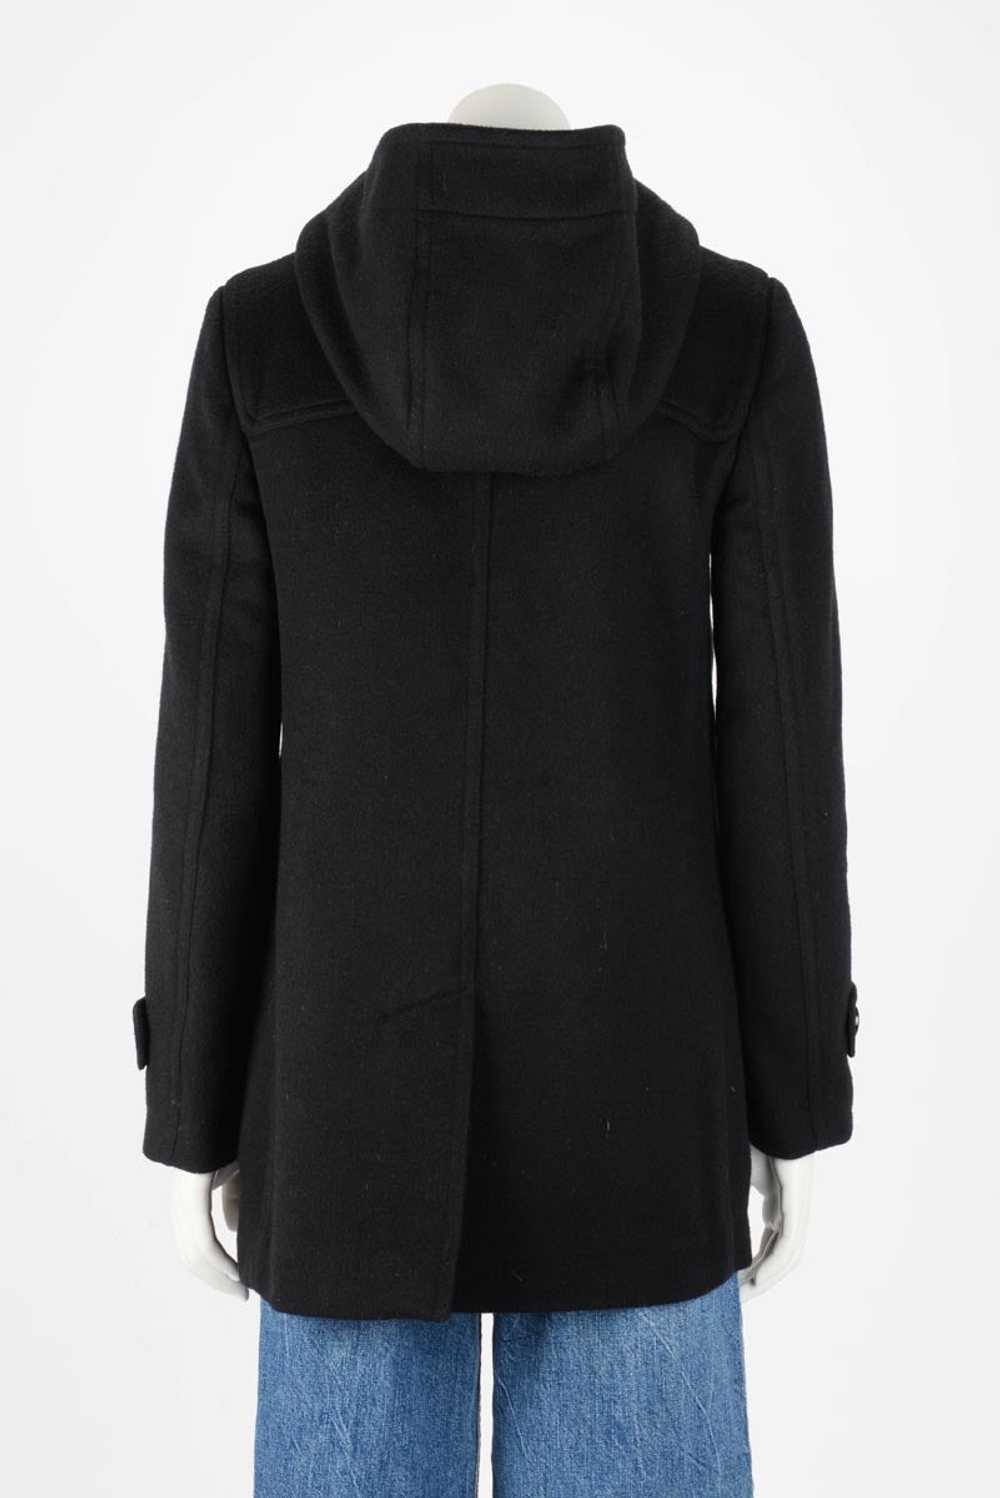 Burberry Brit Black Cashmere Blend Duffle Coat - image 3